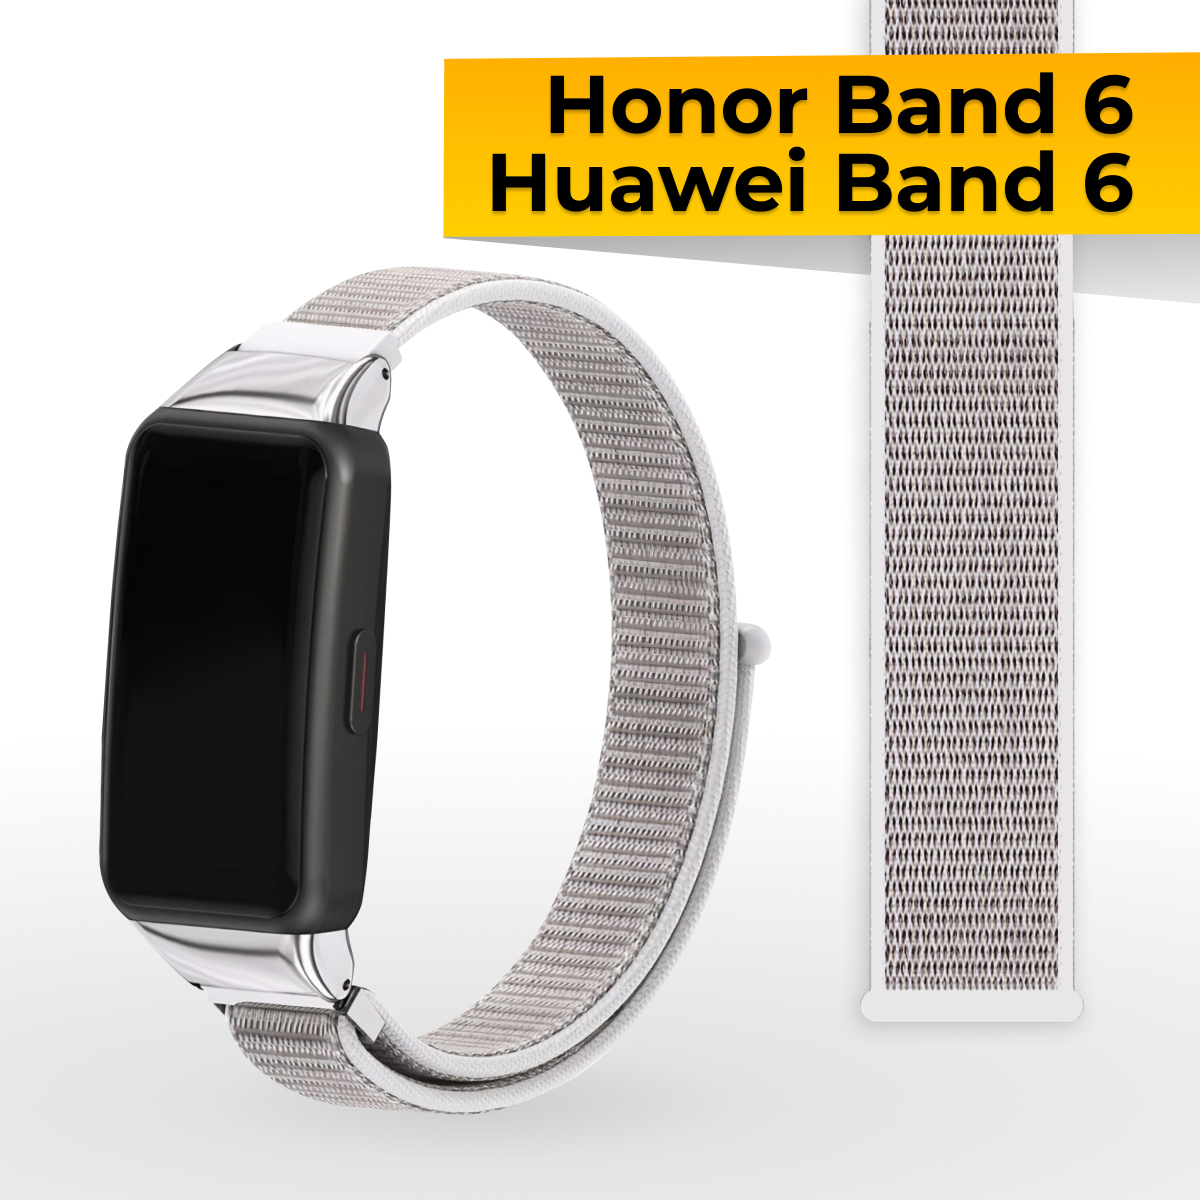 Нейлоновый ремешок на Honor Band 6 и Huawei Band 6 / Спортивный тканевый браслет на липучке для часов Хонор Бэнд Хуавей Бэнд 6 / Сине-фиолетовый